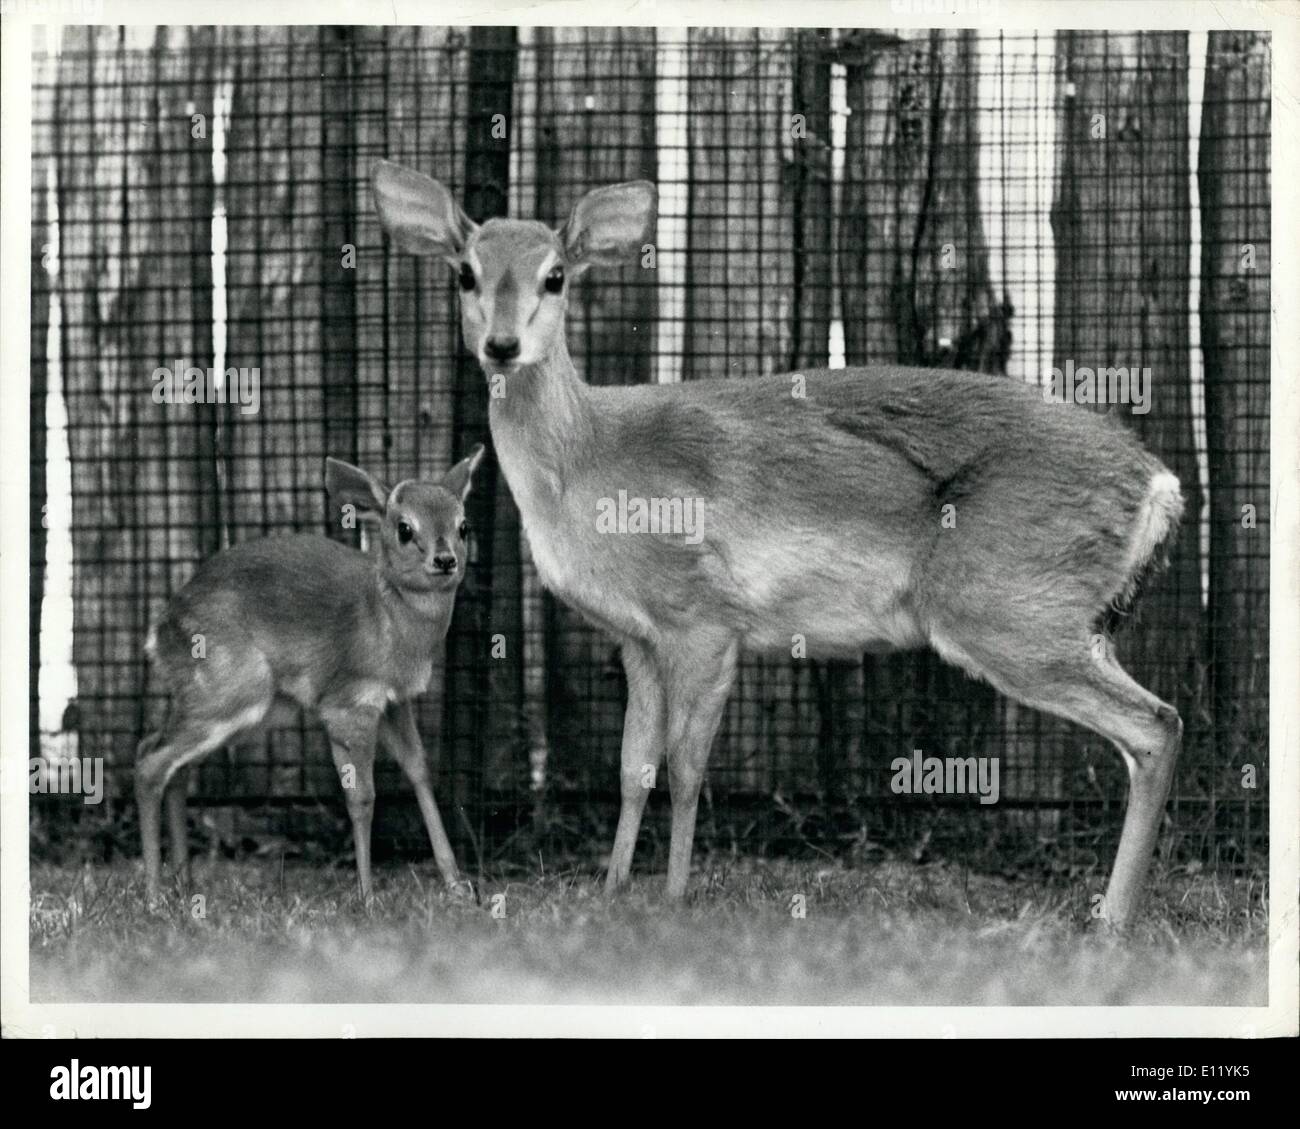 01 janvier 1981 - Un petit Zulu Suni né à la San Diego Wild Animal Park, 8 janvier 1981, pose avec sa mère dans leur enclos au Village de Nairobi le 1 800 acres de préserver la faune. Suni, sont les plus petites espèces d'antilope avec des adultes de 12 à 16 pouces(40 cm) de hauteur au niveau des épaules et pesant environ 18 livres (8 kg).Le bébé se trouve à seulement 7 pouces (17 cm) de hauteur. l'antilope marron se retrouvent tout au long de l'Afrique du Sud, mais sont rares en captivité Banque D'Images